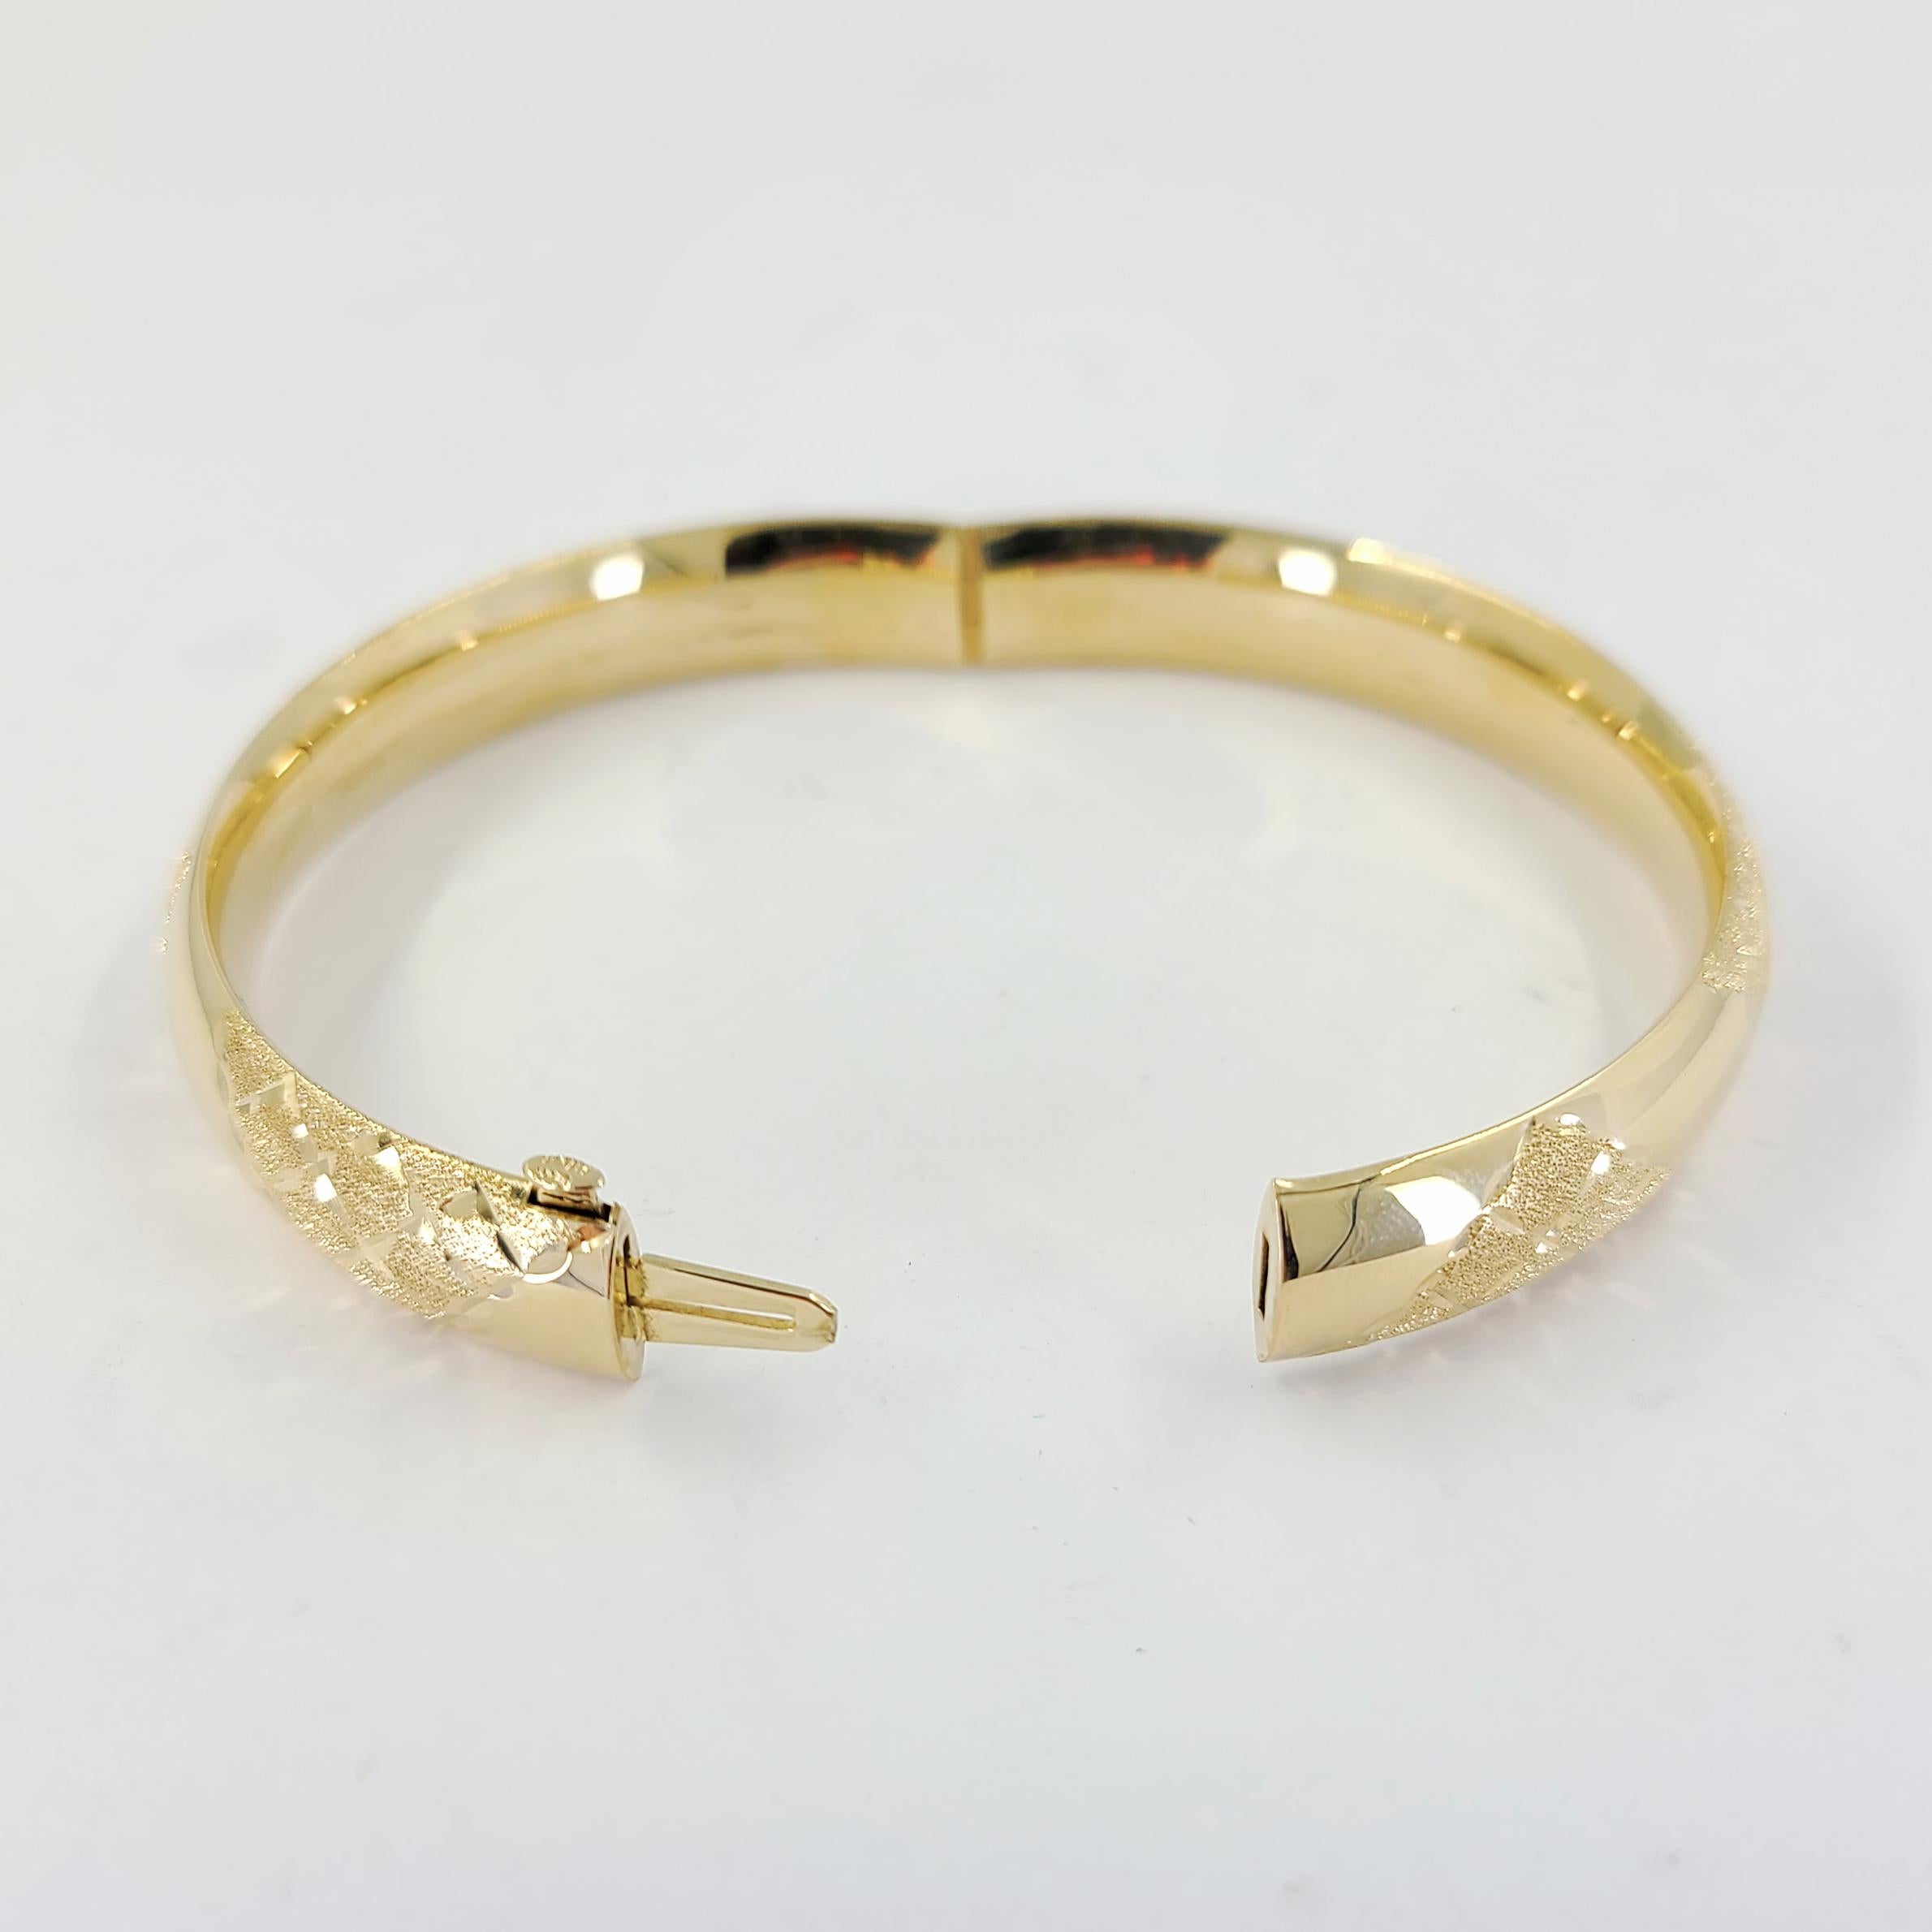 Women's or Men's 14 Karat Yellow Gold Engraved Hinged Bangle Bracelet